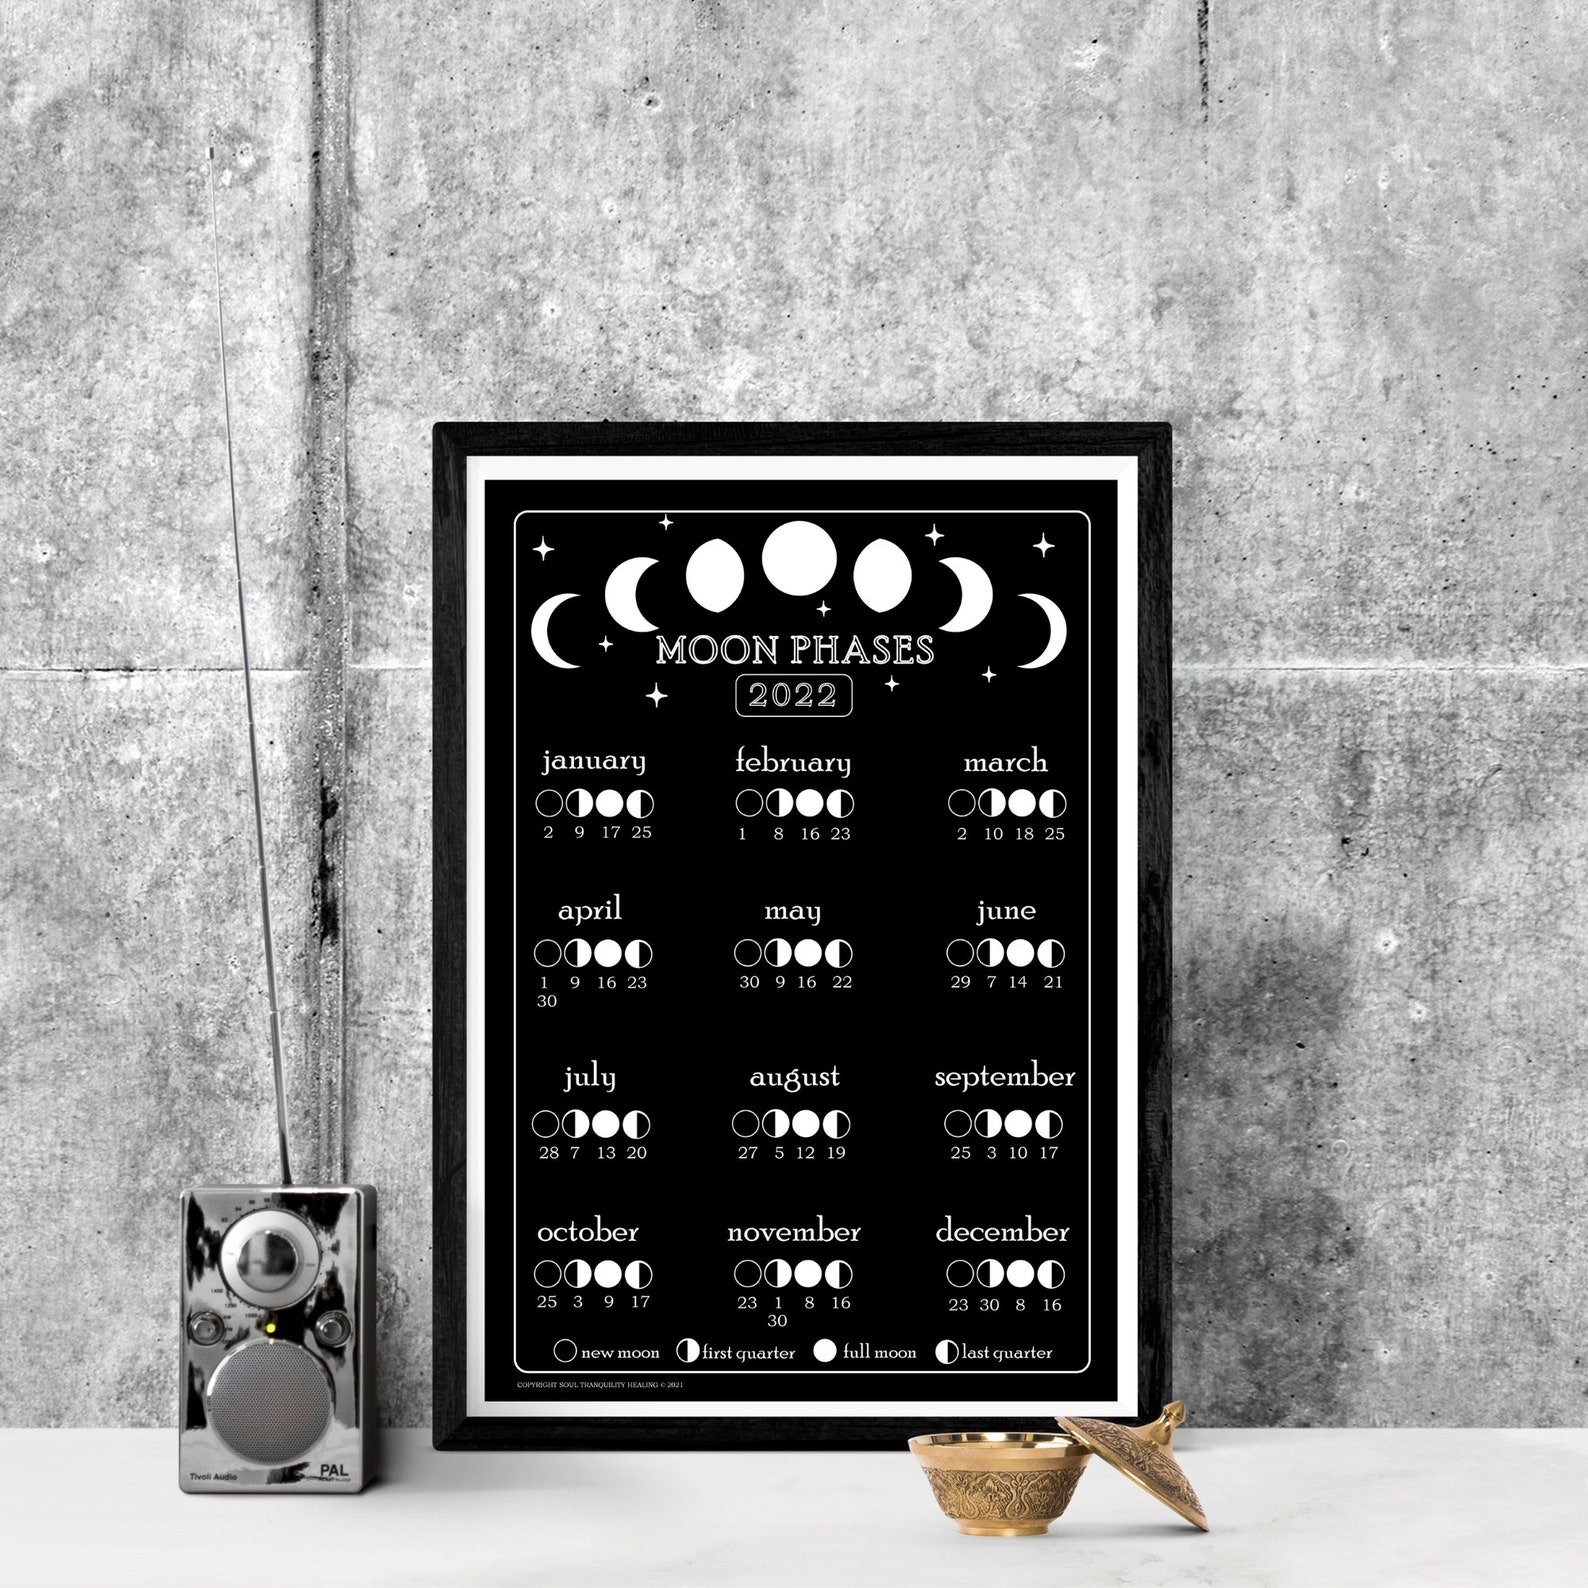 Lunar Calendar 365 Days And Moon Phases Calendar 2022 Moon | Etsy for Lunar Calendar 2022 Printable